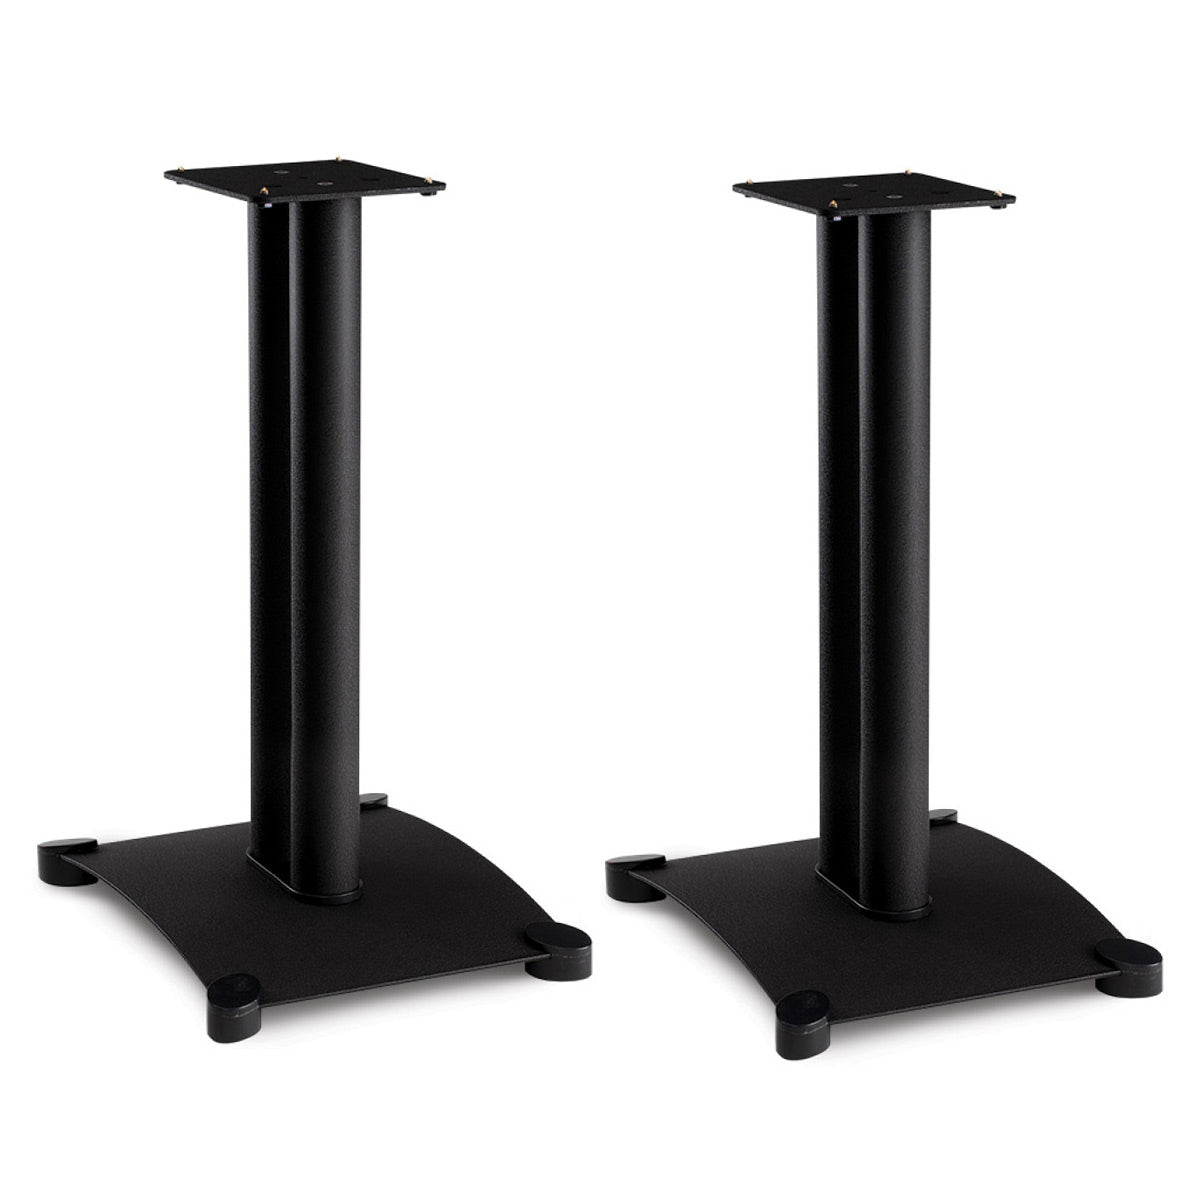 Sanus SF22 Steel Series 22" Bookshelf Speaker Stands - Pair (Black)